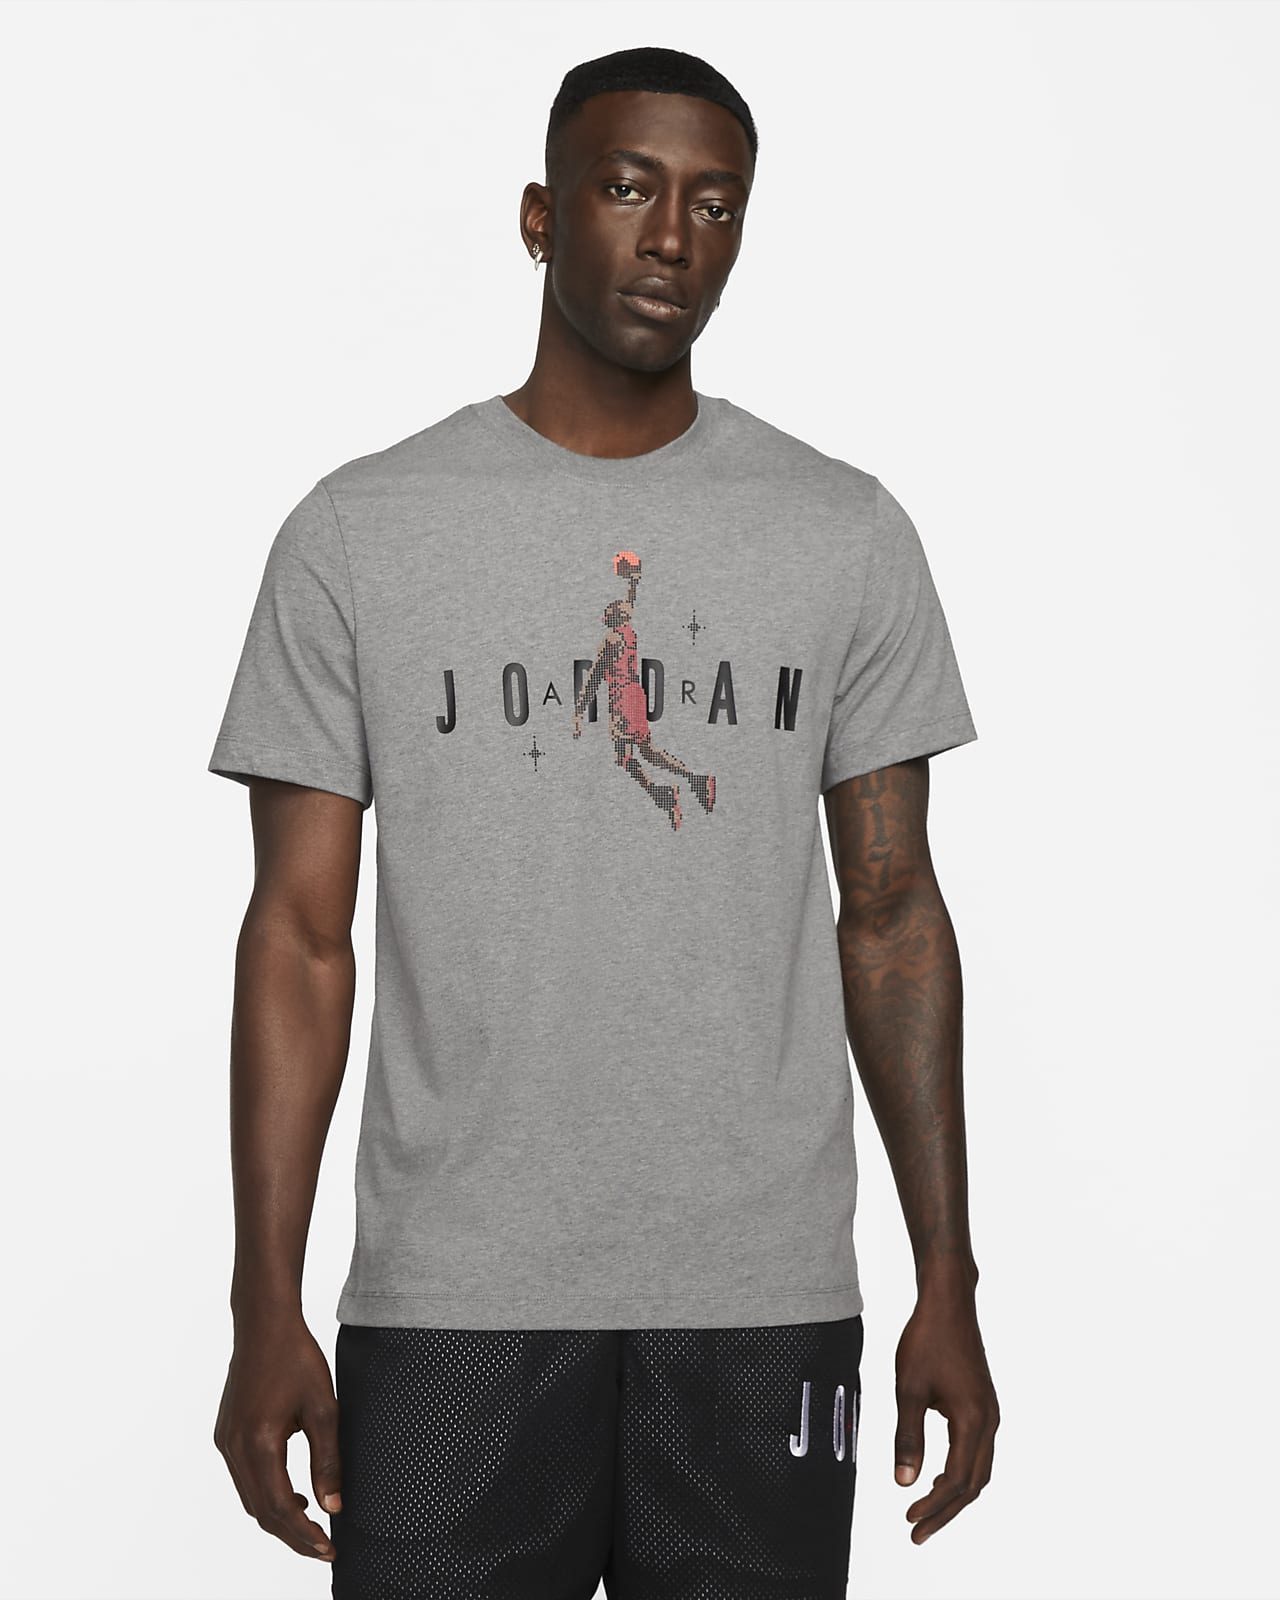 Jordan Brand Holiday 男款短袖 T 恤